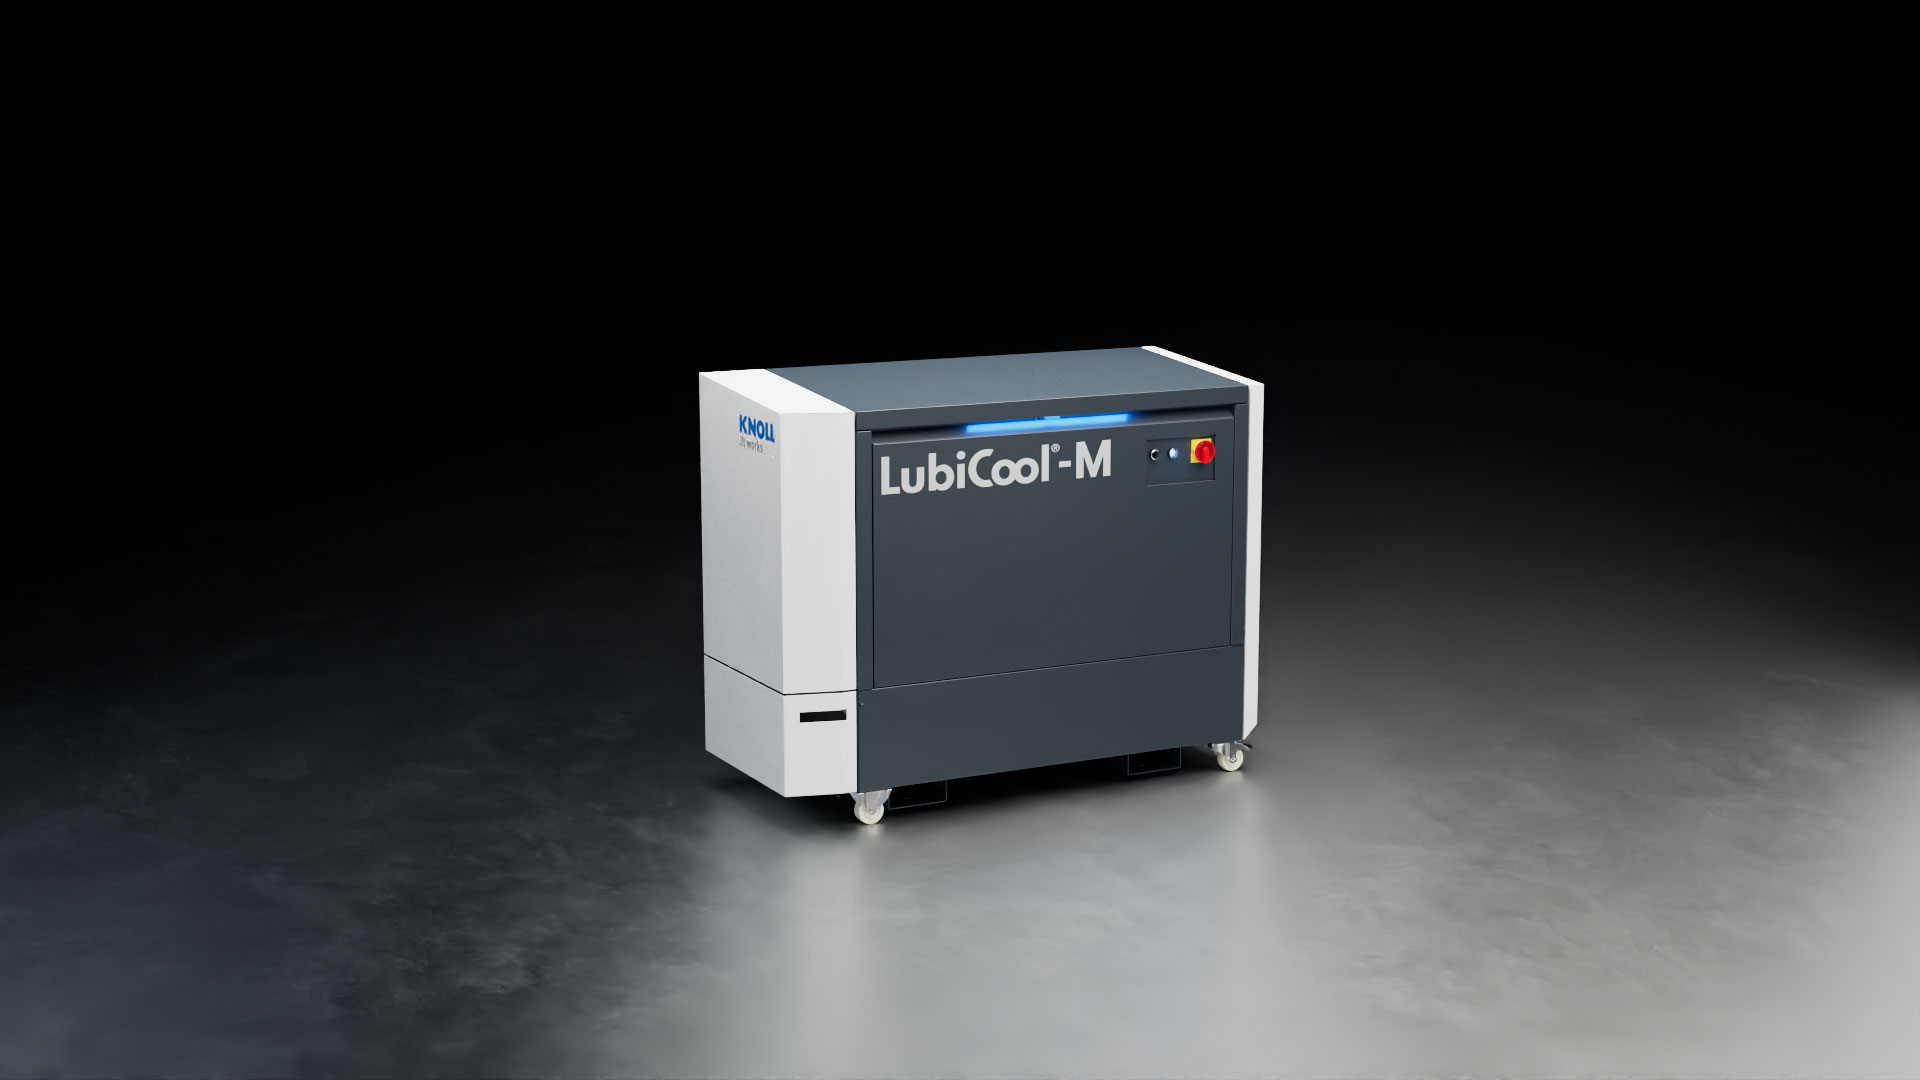 Animierte Ansicht der Kühlschmiermittel Maschine LubiCool-M von Knoll